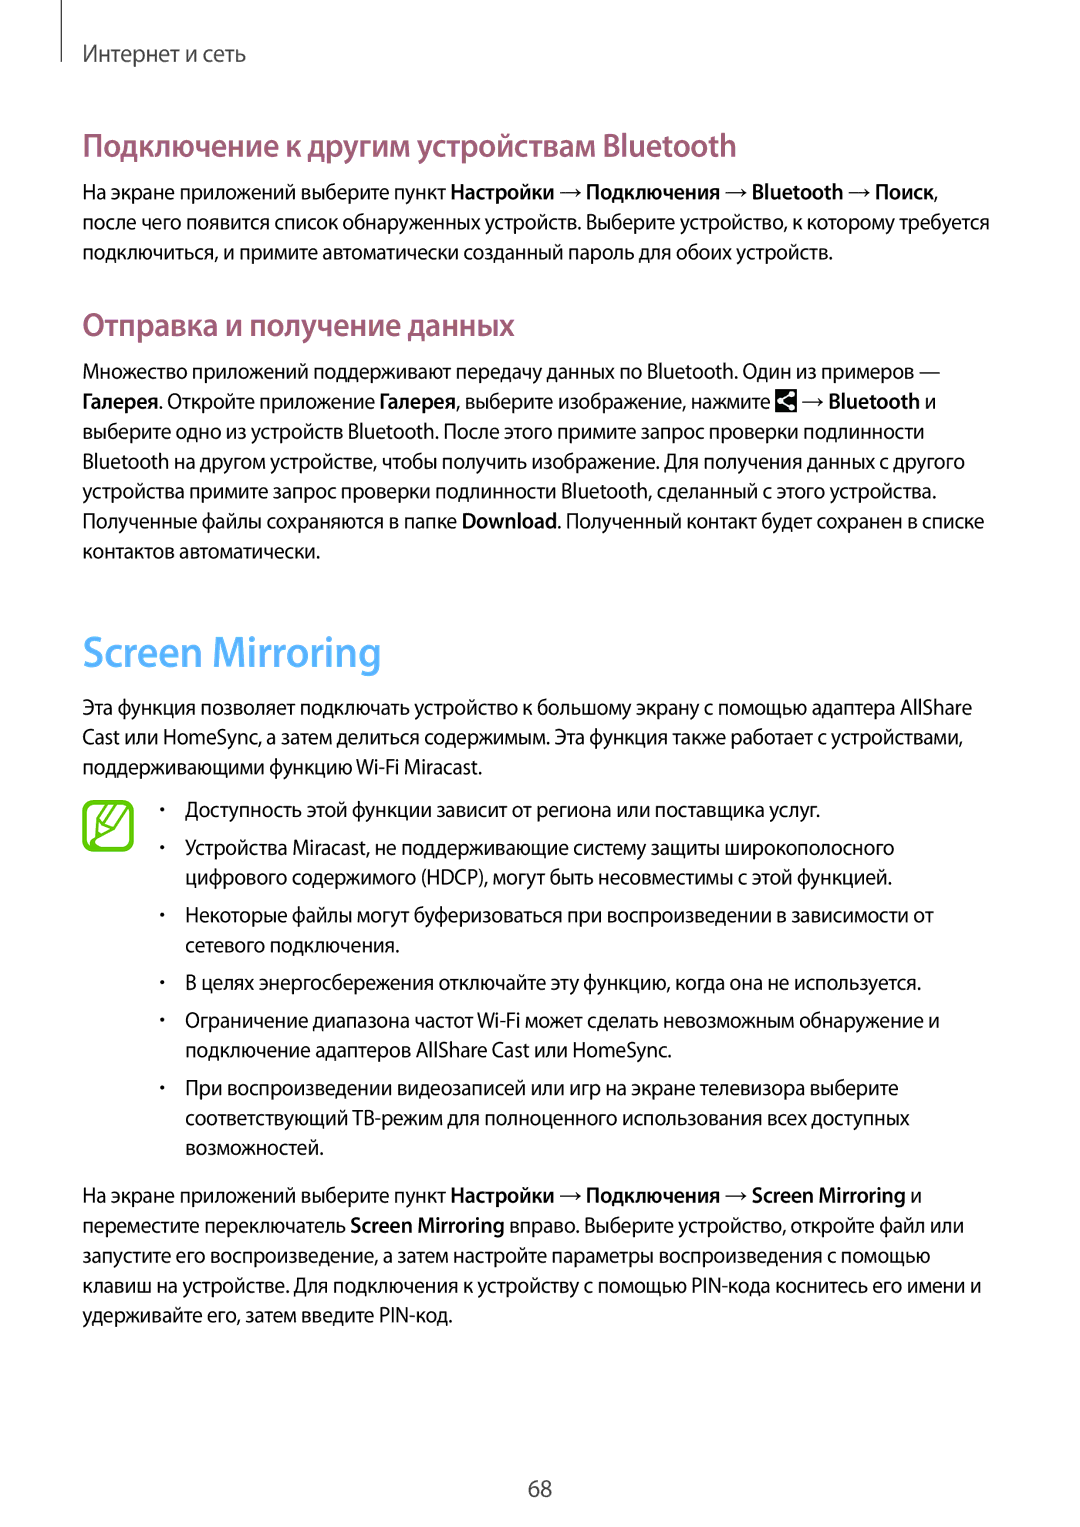 Samsung SM-P6010ZWAMGF manual Screen Mirroring, Подключение к другим устройствам Bluetooth, Отправка и получение данных 